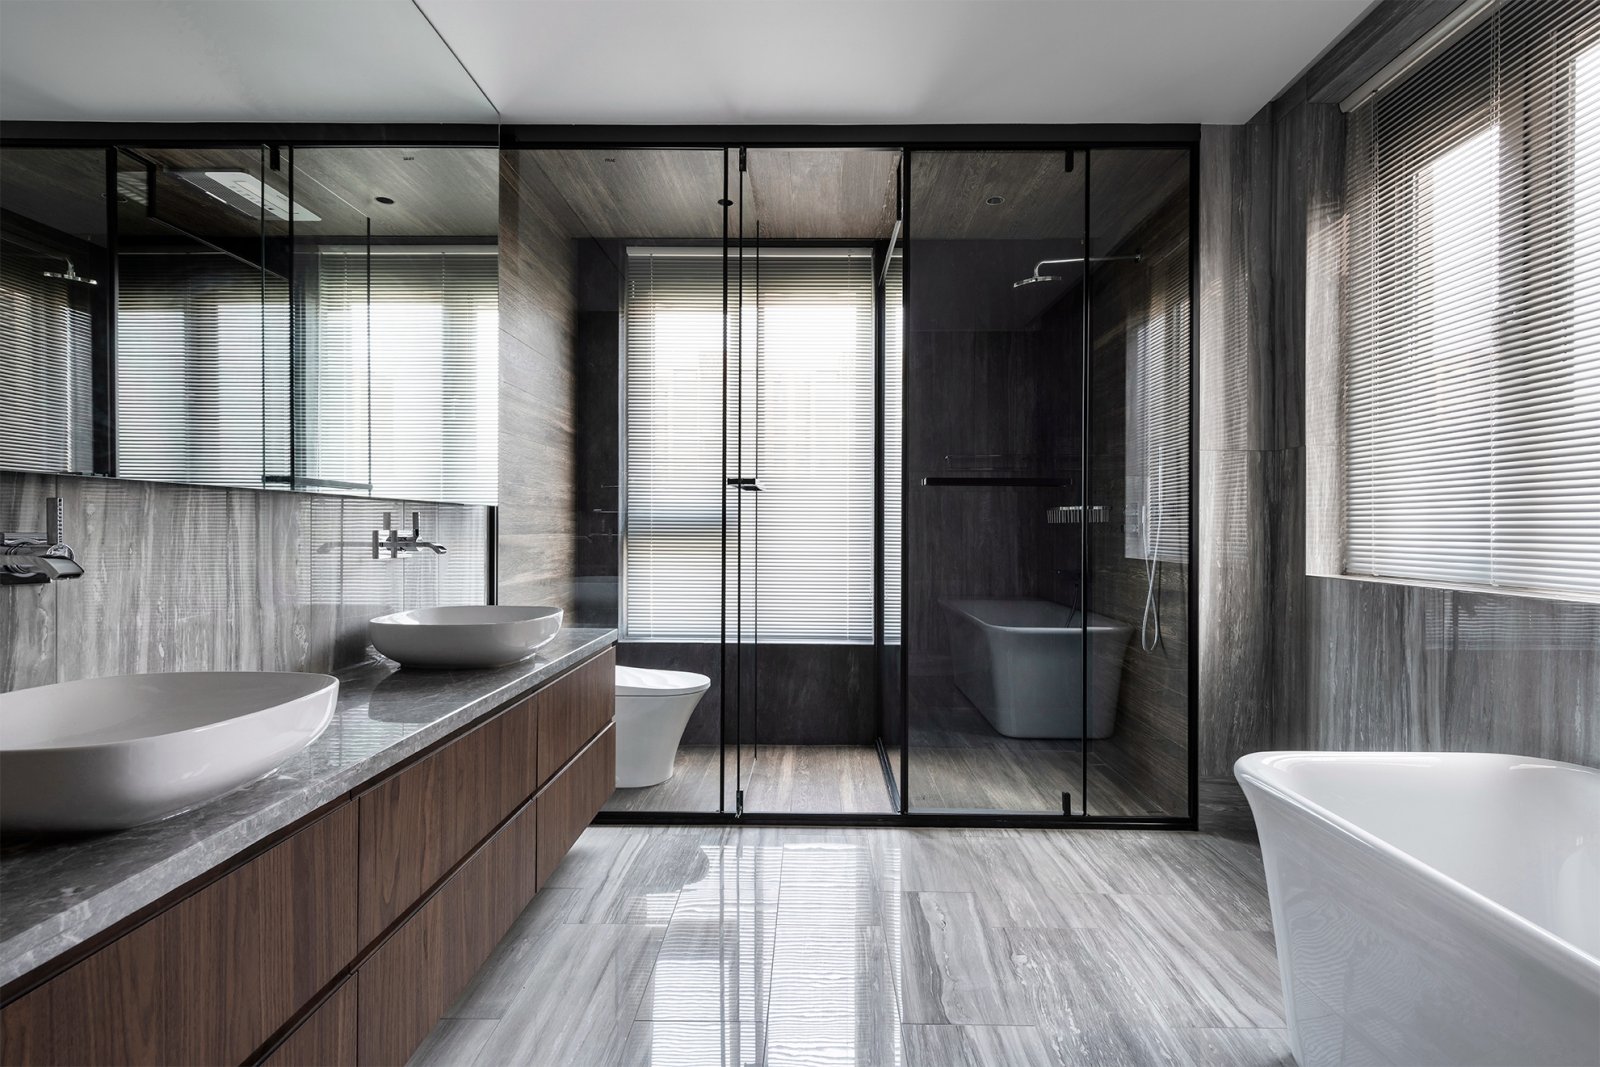 卫生间采光较好，现代元素的洗漱台和墙面相映成趣，营造空间的温馨舒适。